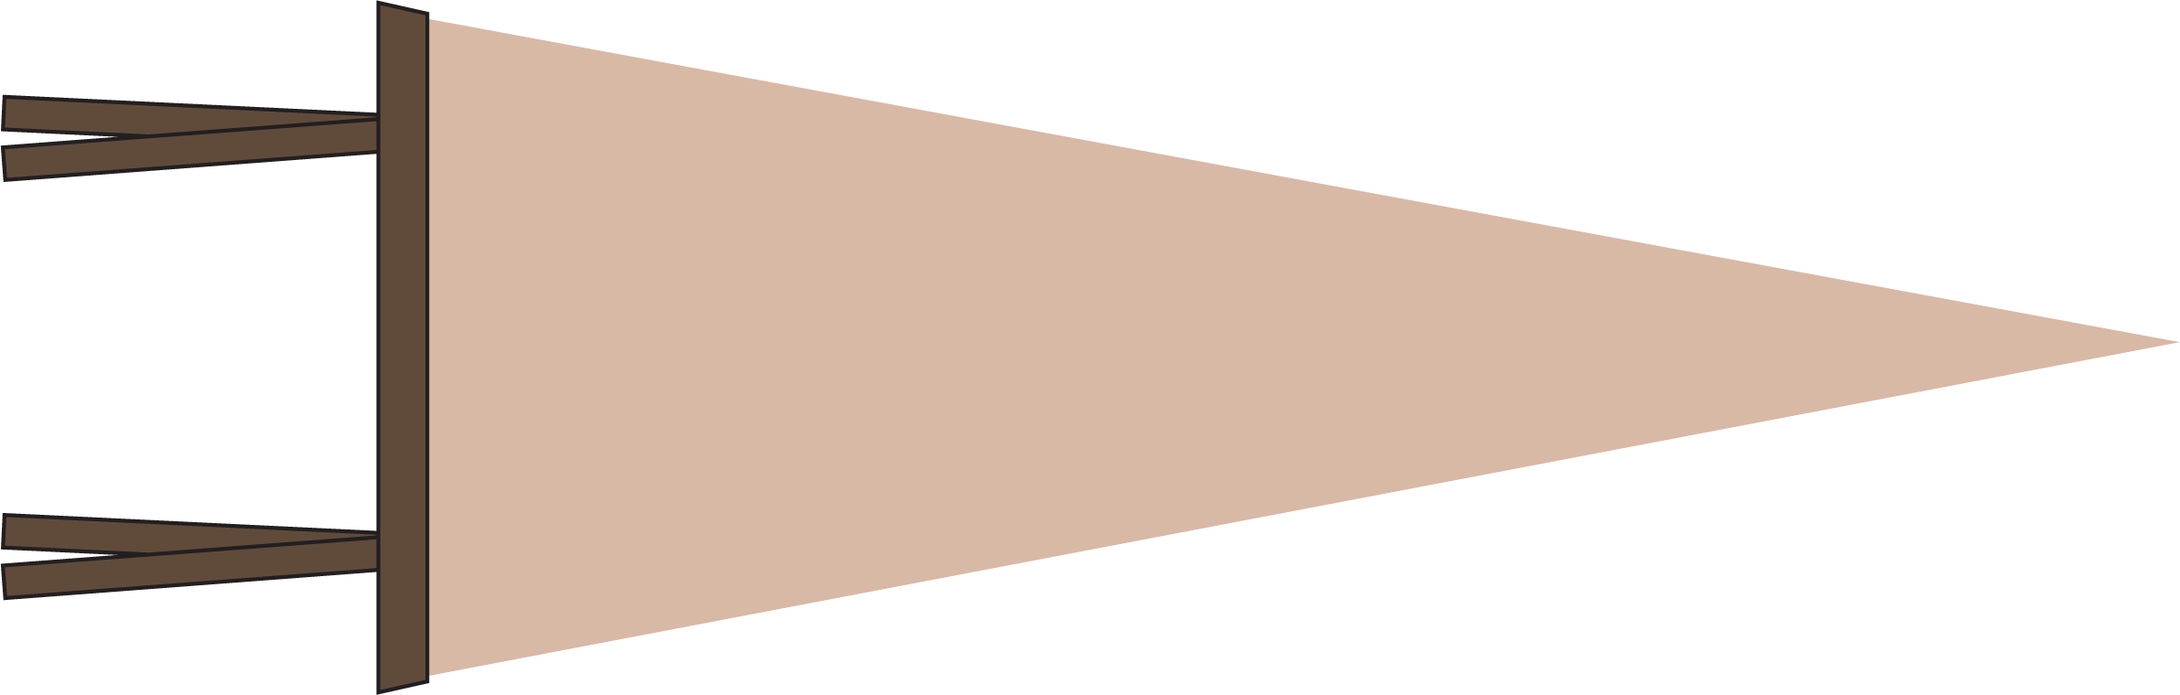 Beige brown pennant